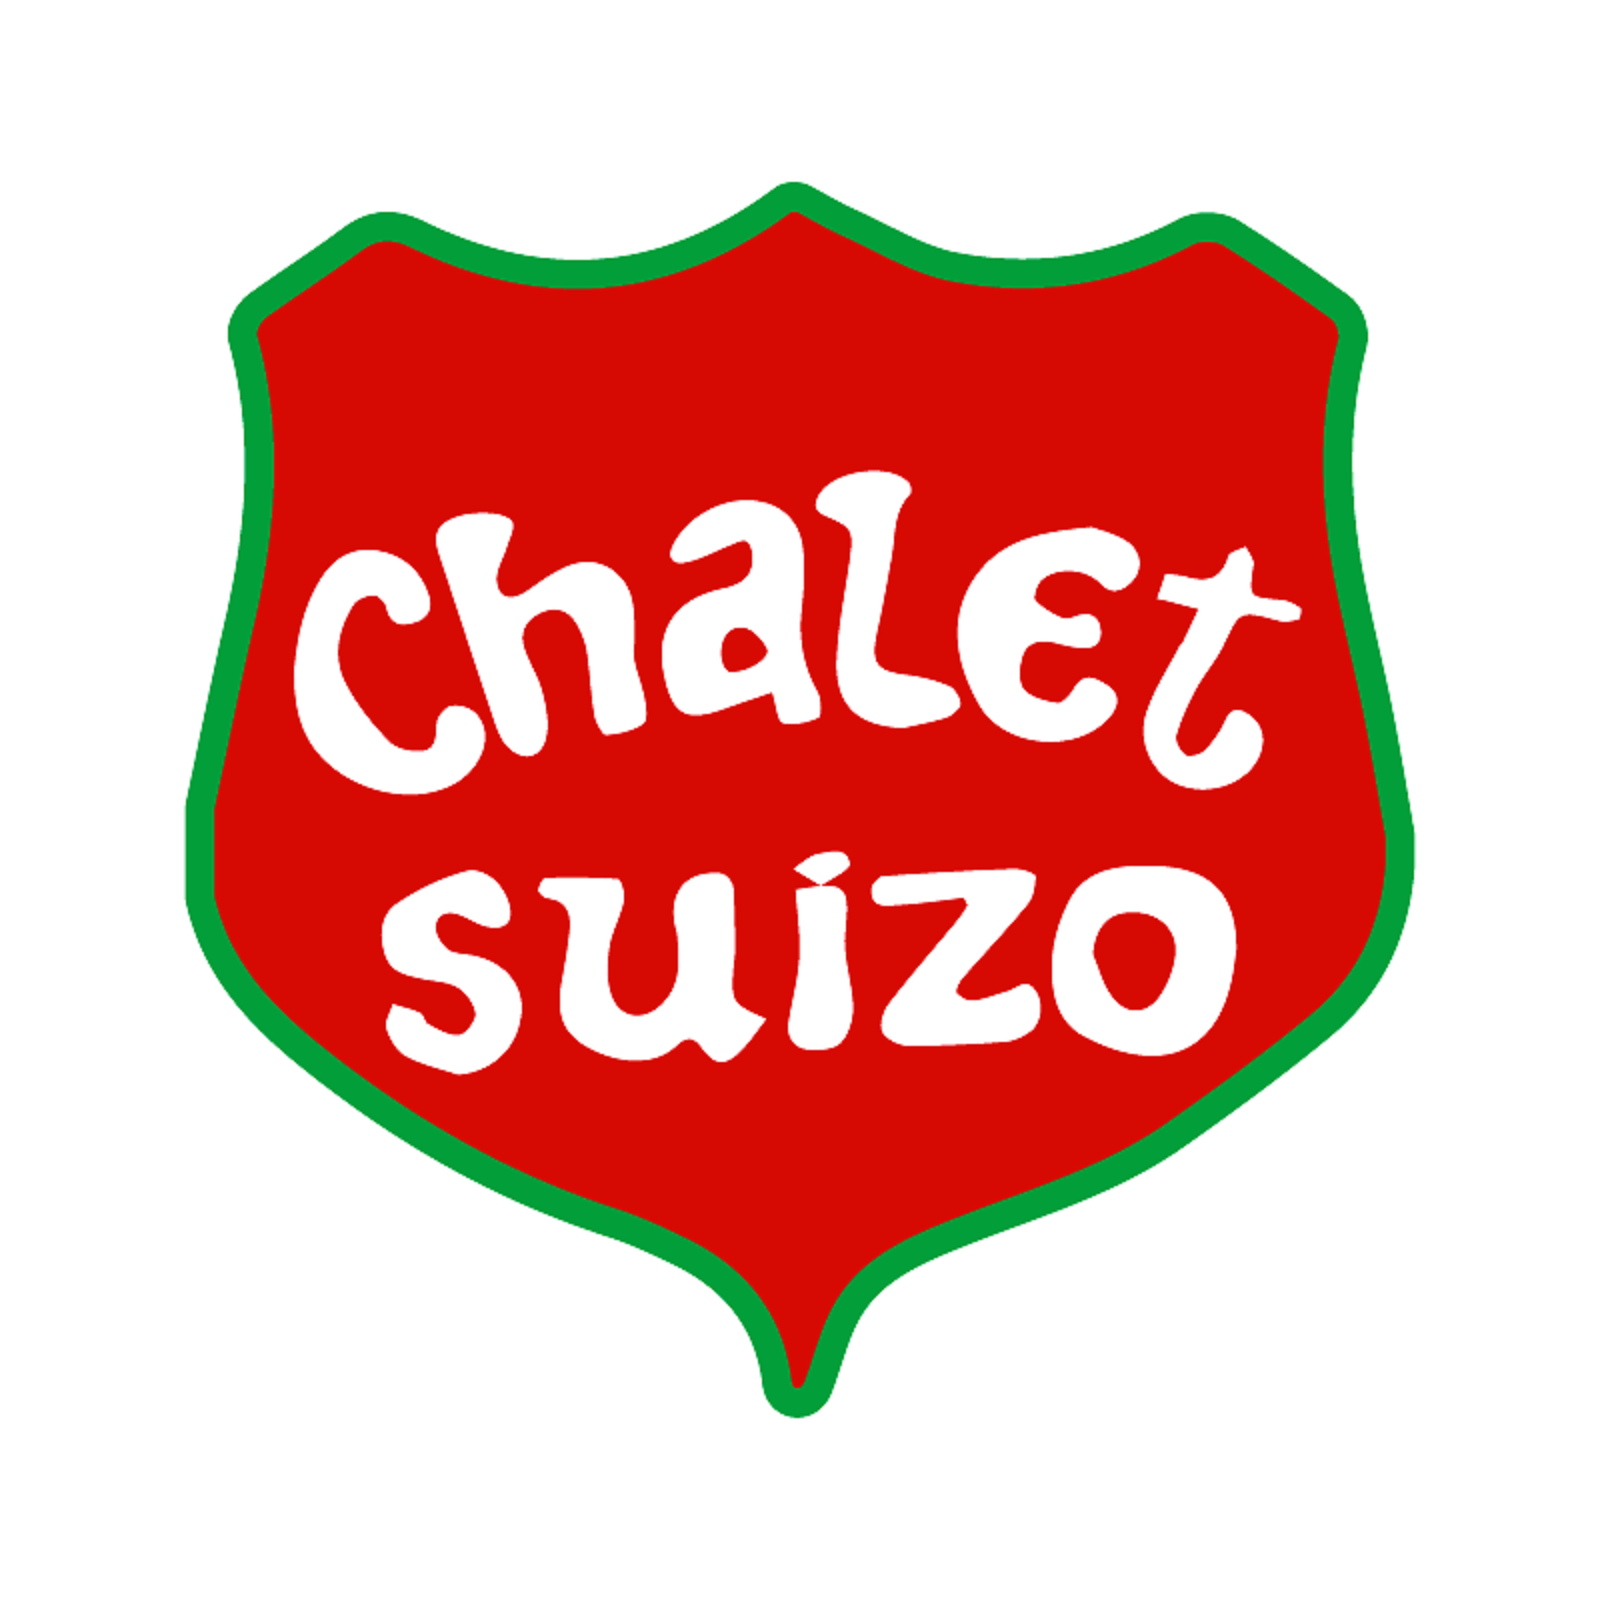 Cliente activo la estación cárnica restaurante chalet suizo